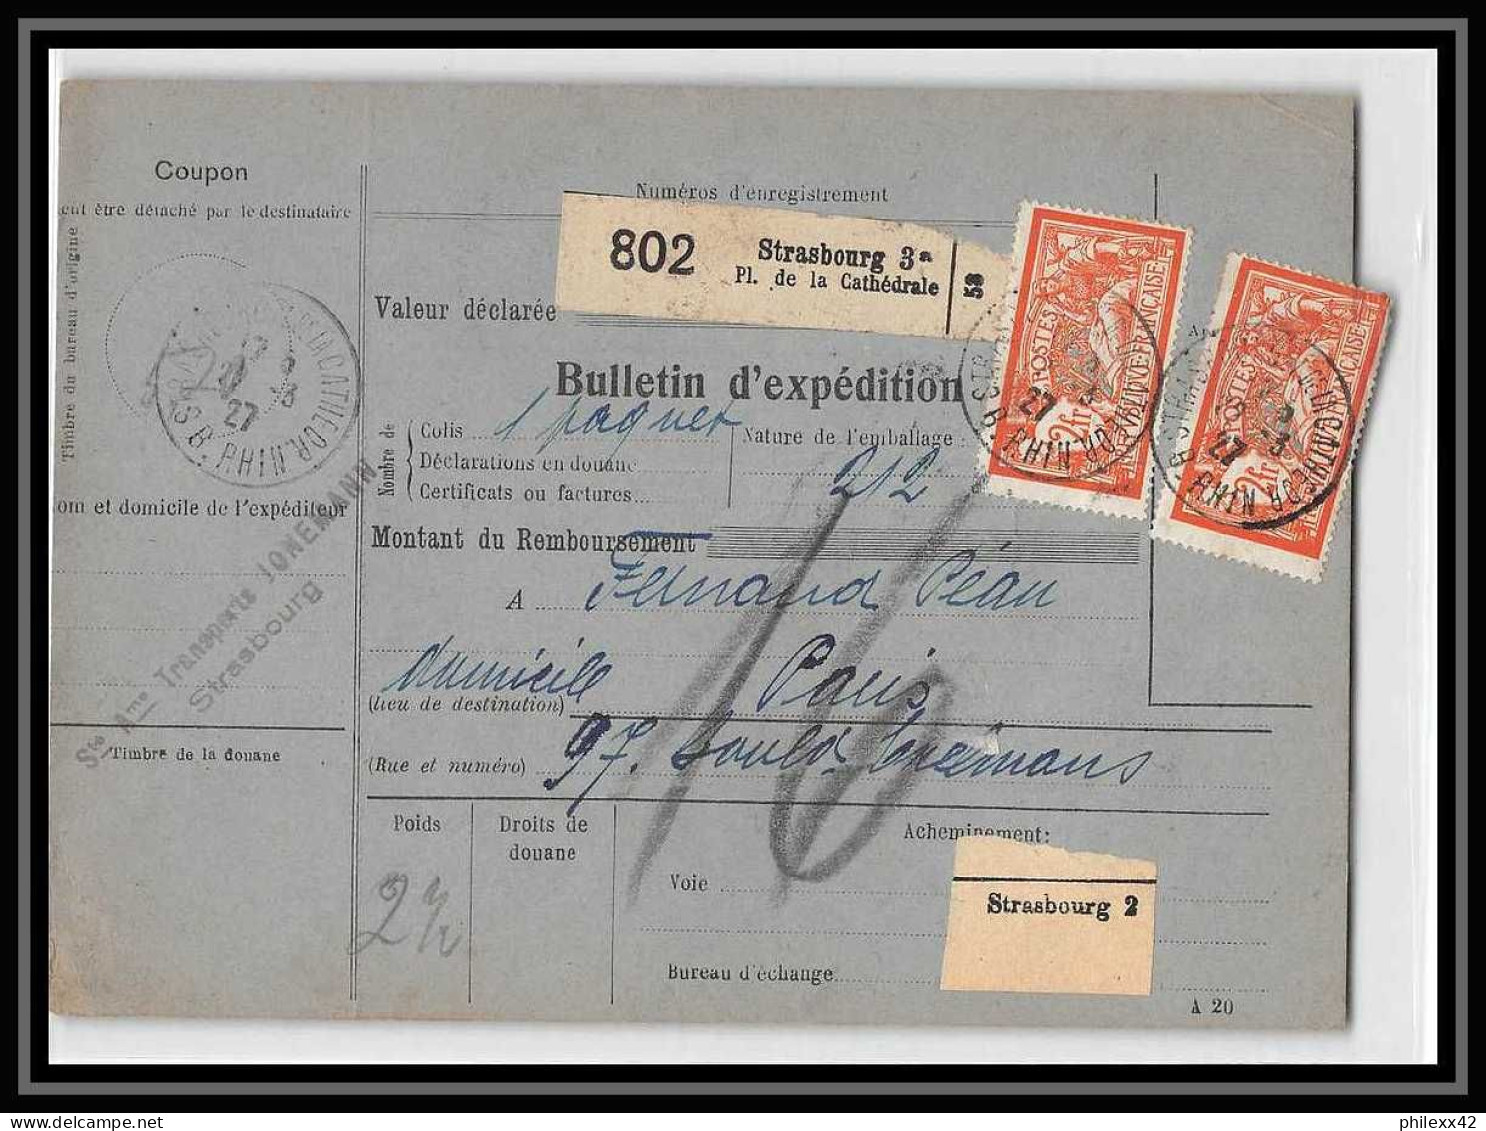 25024 Bulletin D'expédition France Colis Postaux Fiscal Haut Rhin - 1927 Strasbourg Merson 145 Alsace-Lorraine  - Lettres & Documents